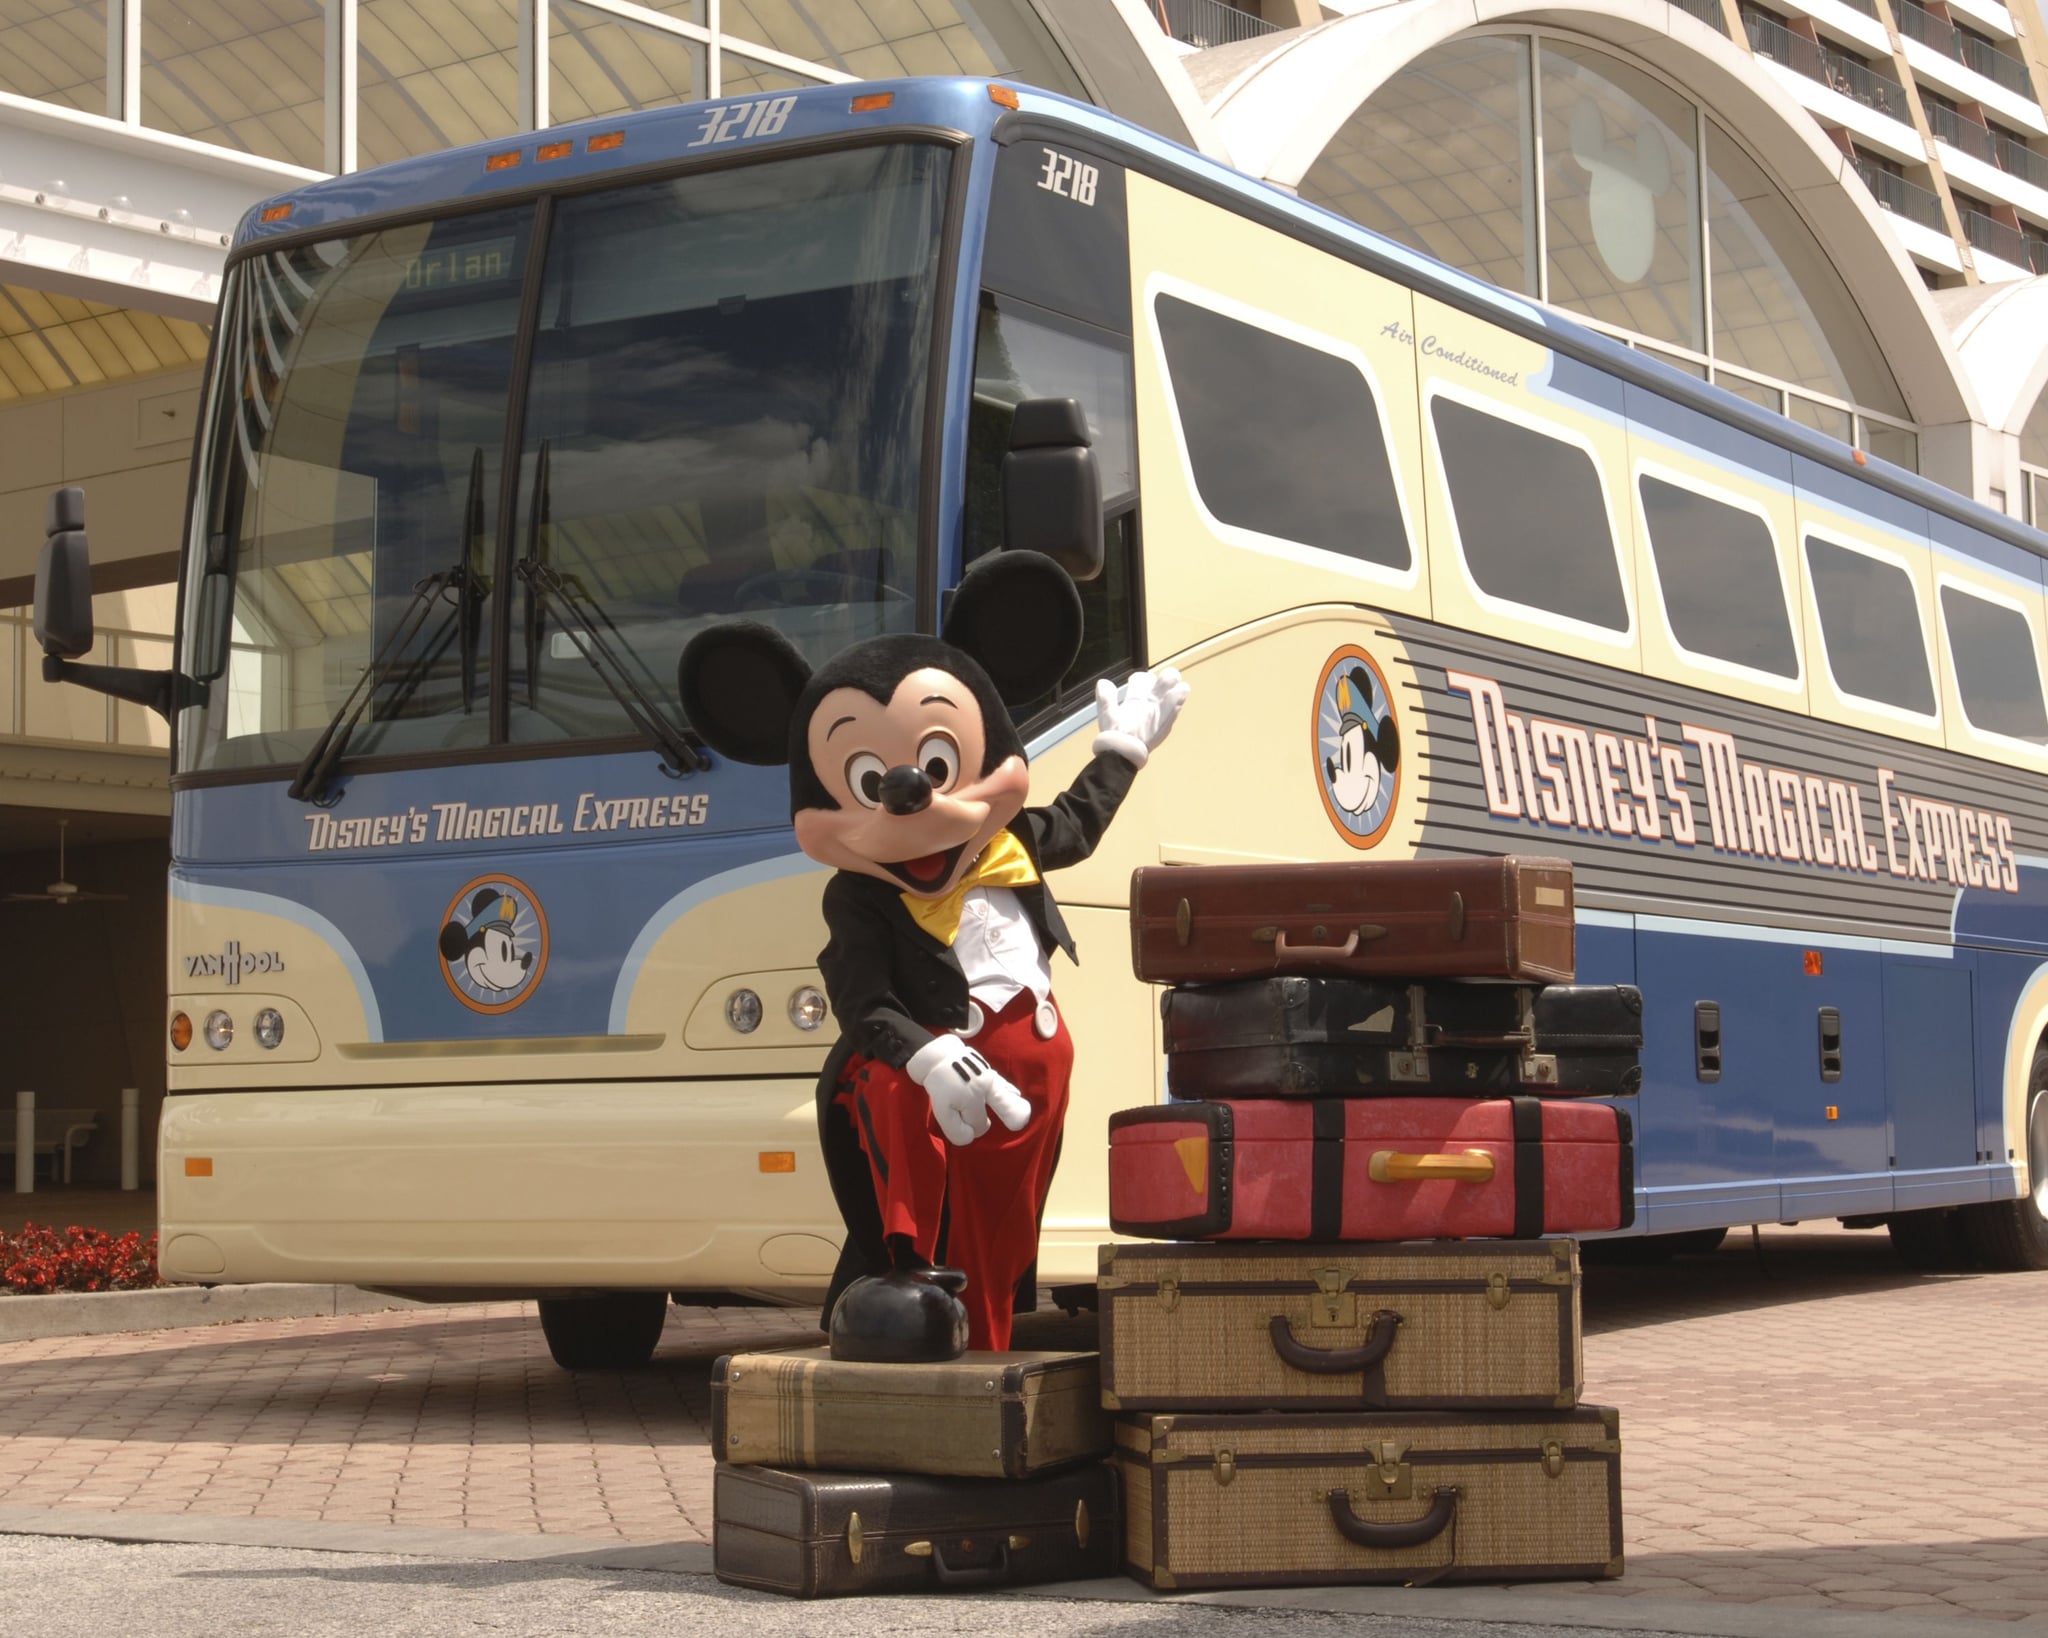 Is Disney Shuttle free?